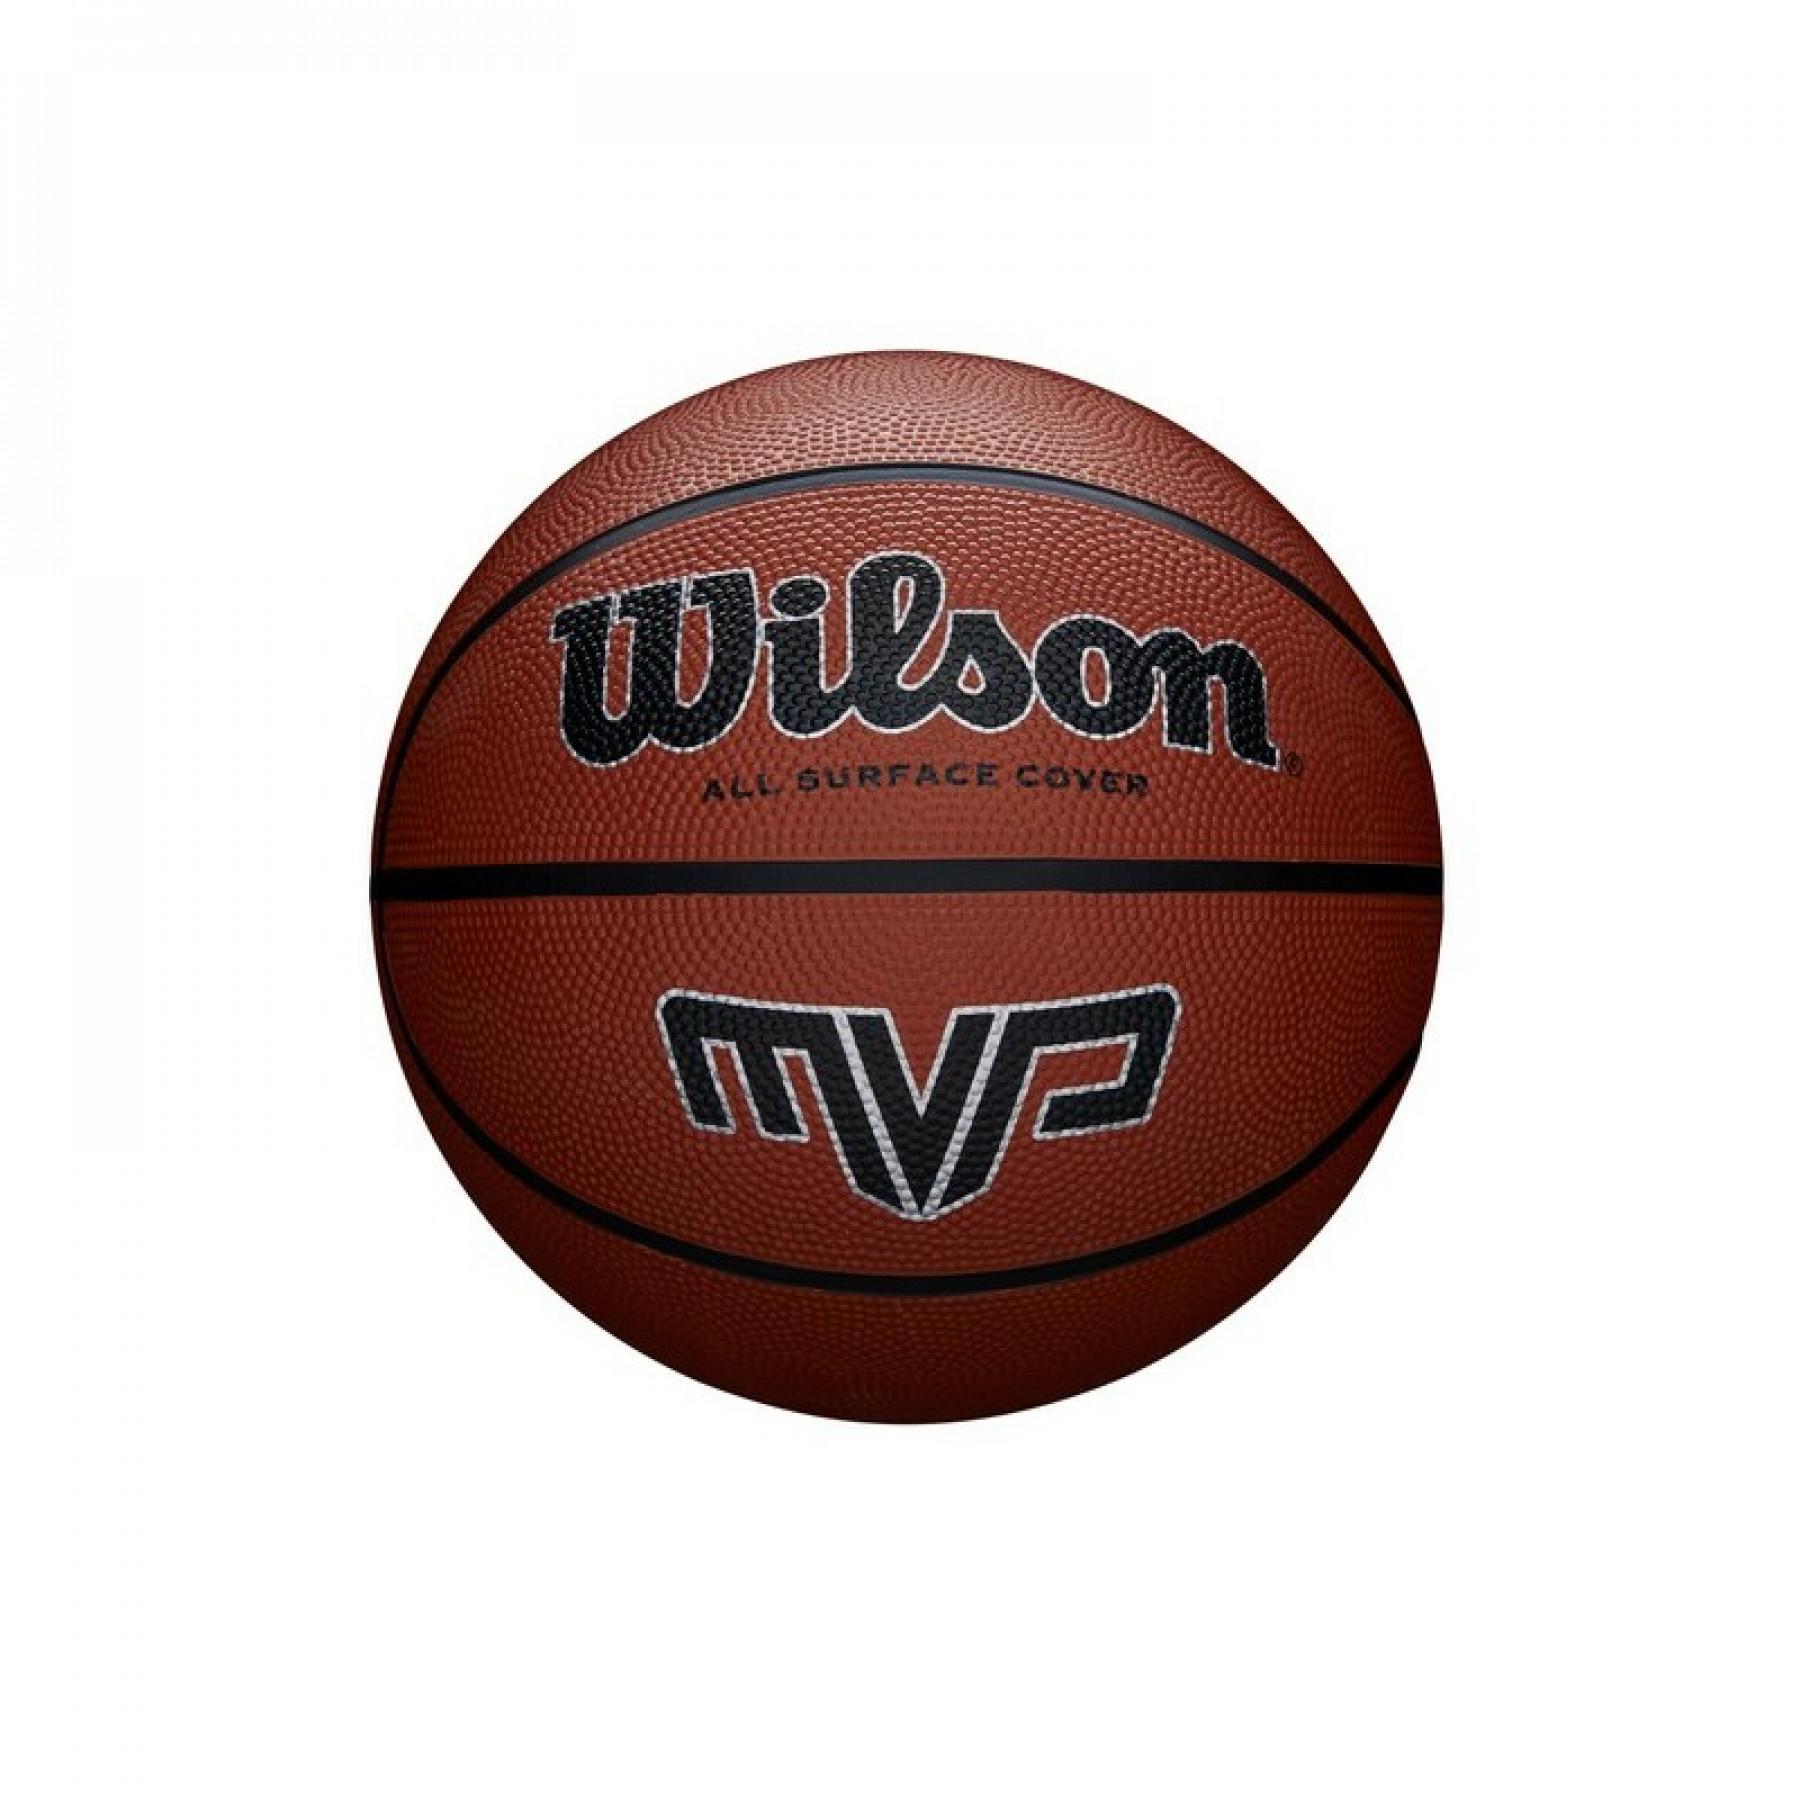 Piłka do koszykówki Wilson MVP 295 Classic